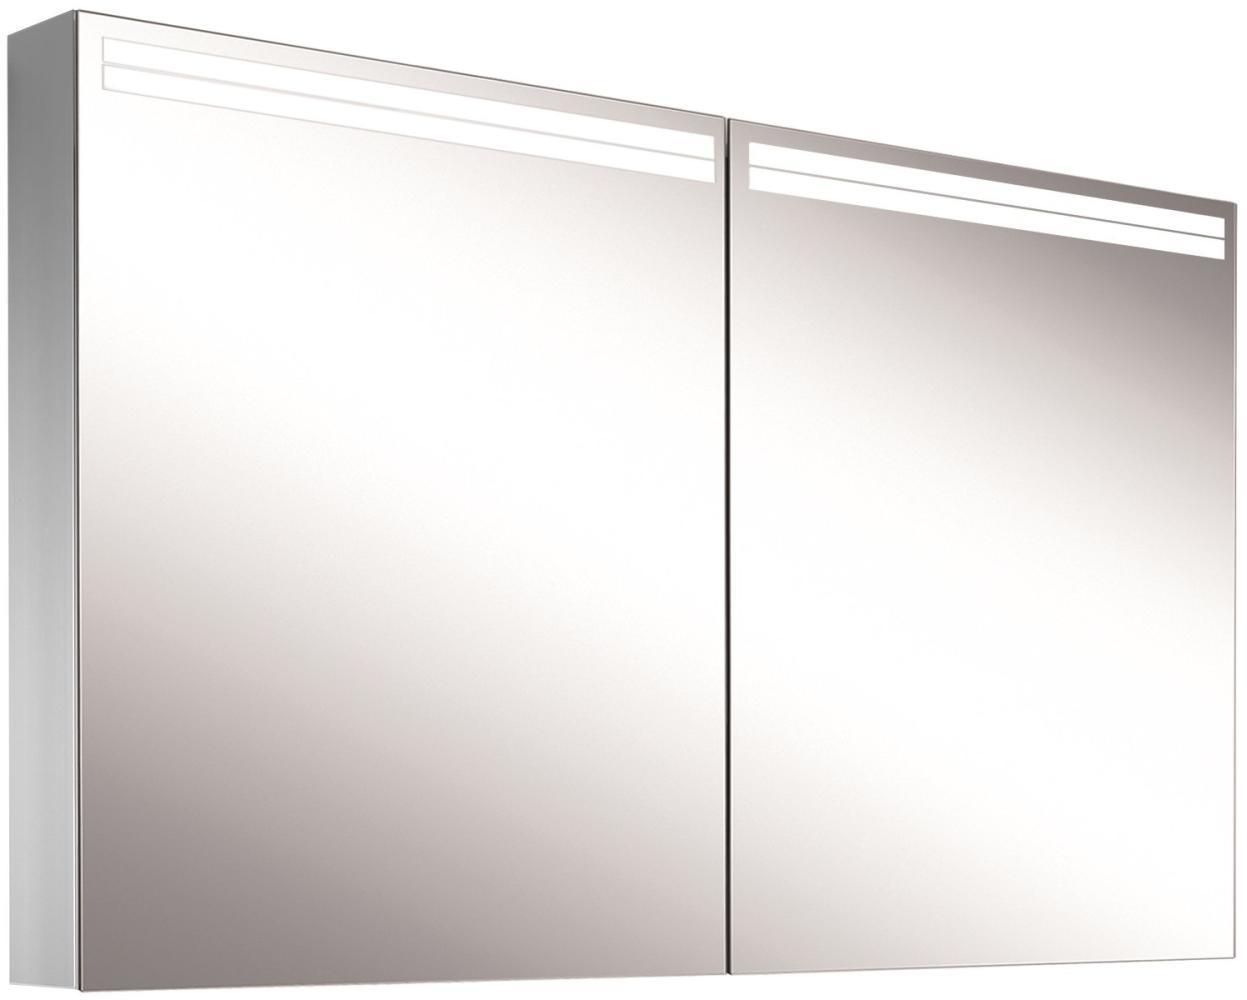 Schneider ARANGALINE LED Lichtspiegelschrank, 2 Doppelspiegeltüren, 120x70x12cm, 160. 520. 02. 41, Ausführung: EU-Norm/Korpus silber eloxiert - 160. 520. 02. 50 Bild 1